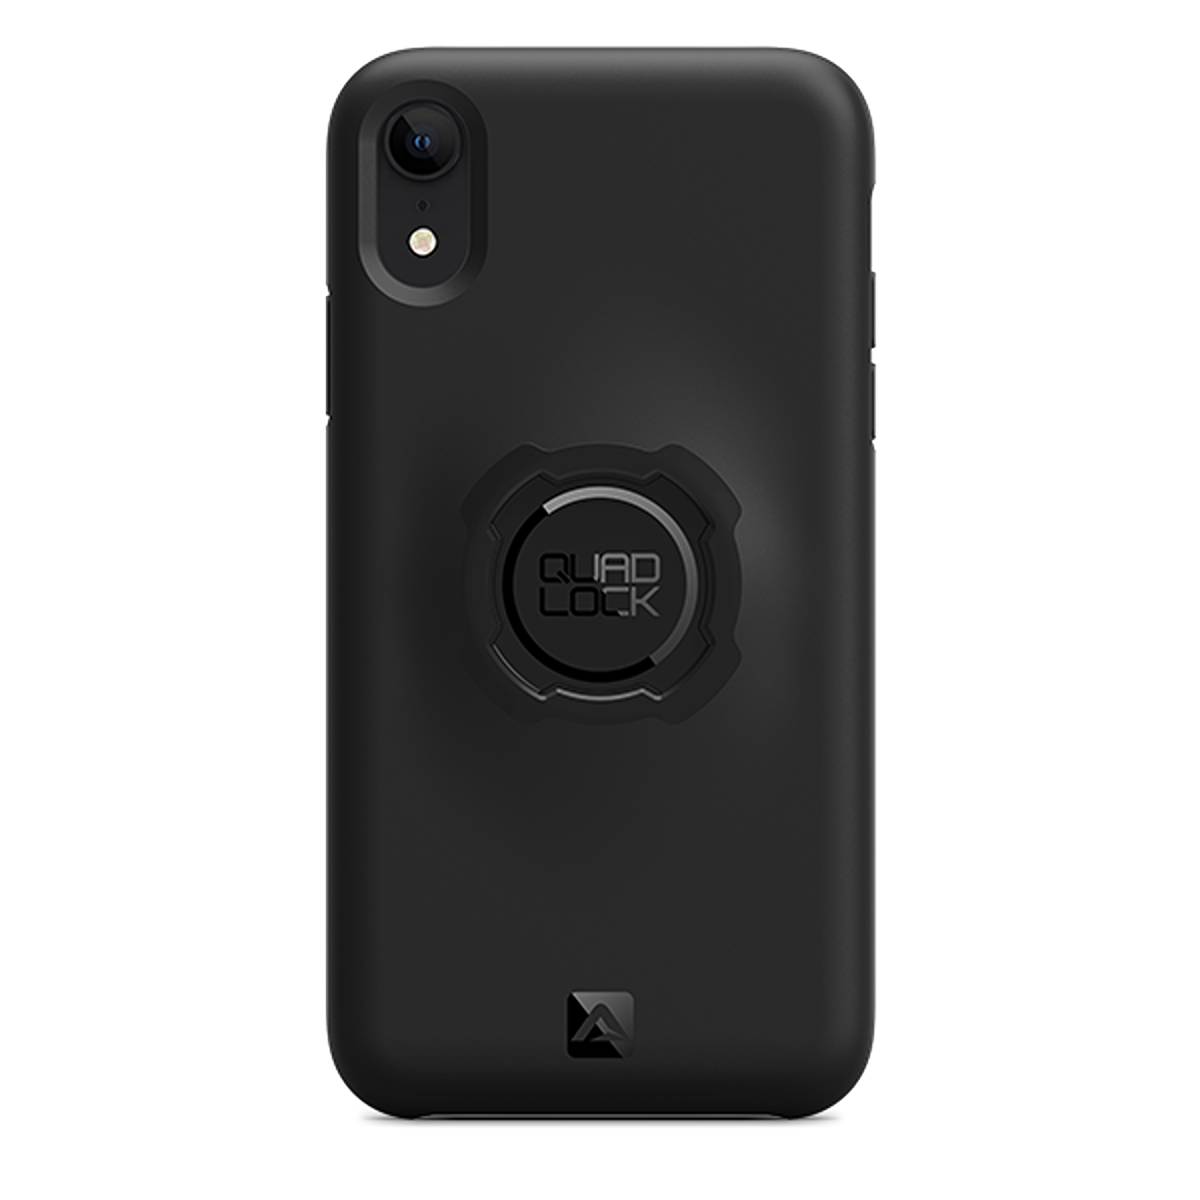 Quad Lock Case Iphone XR Size